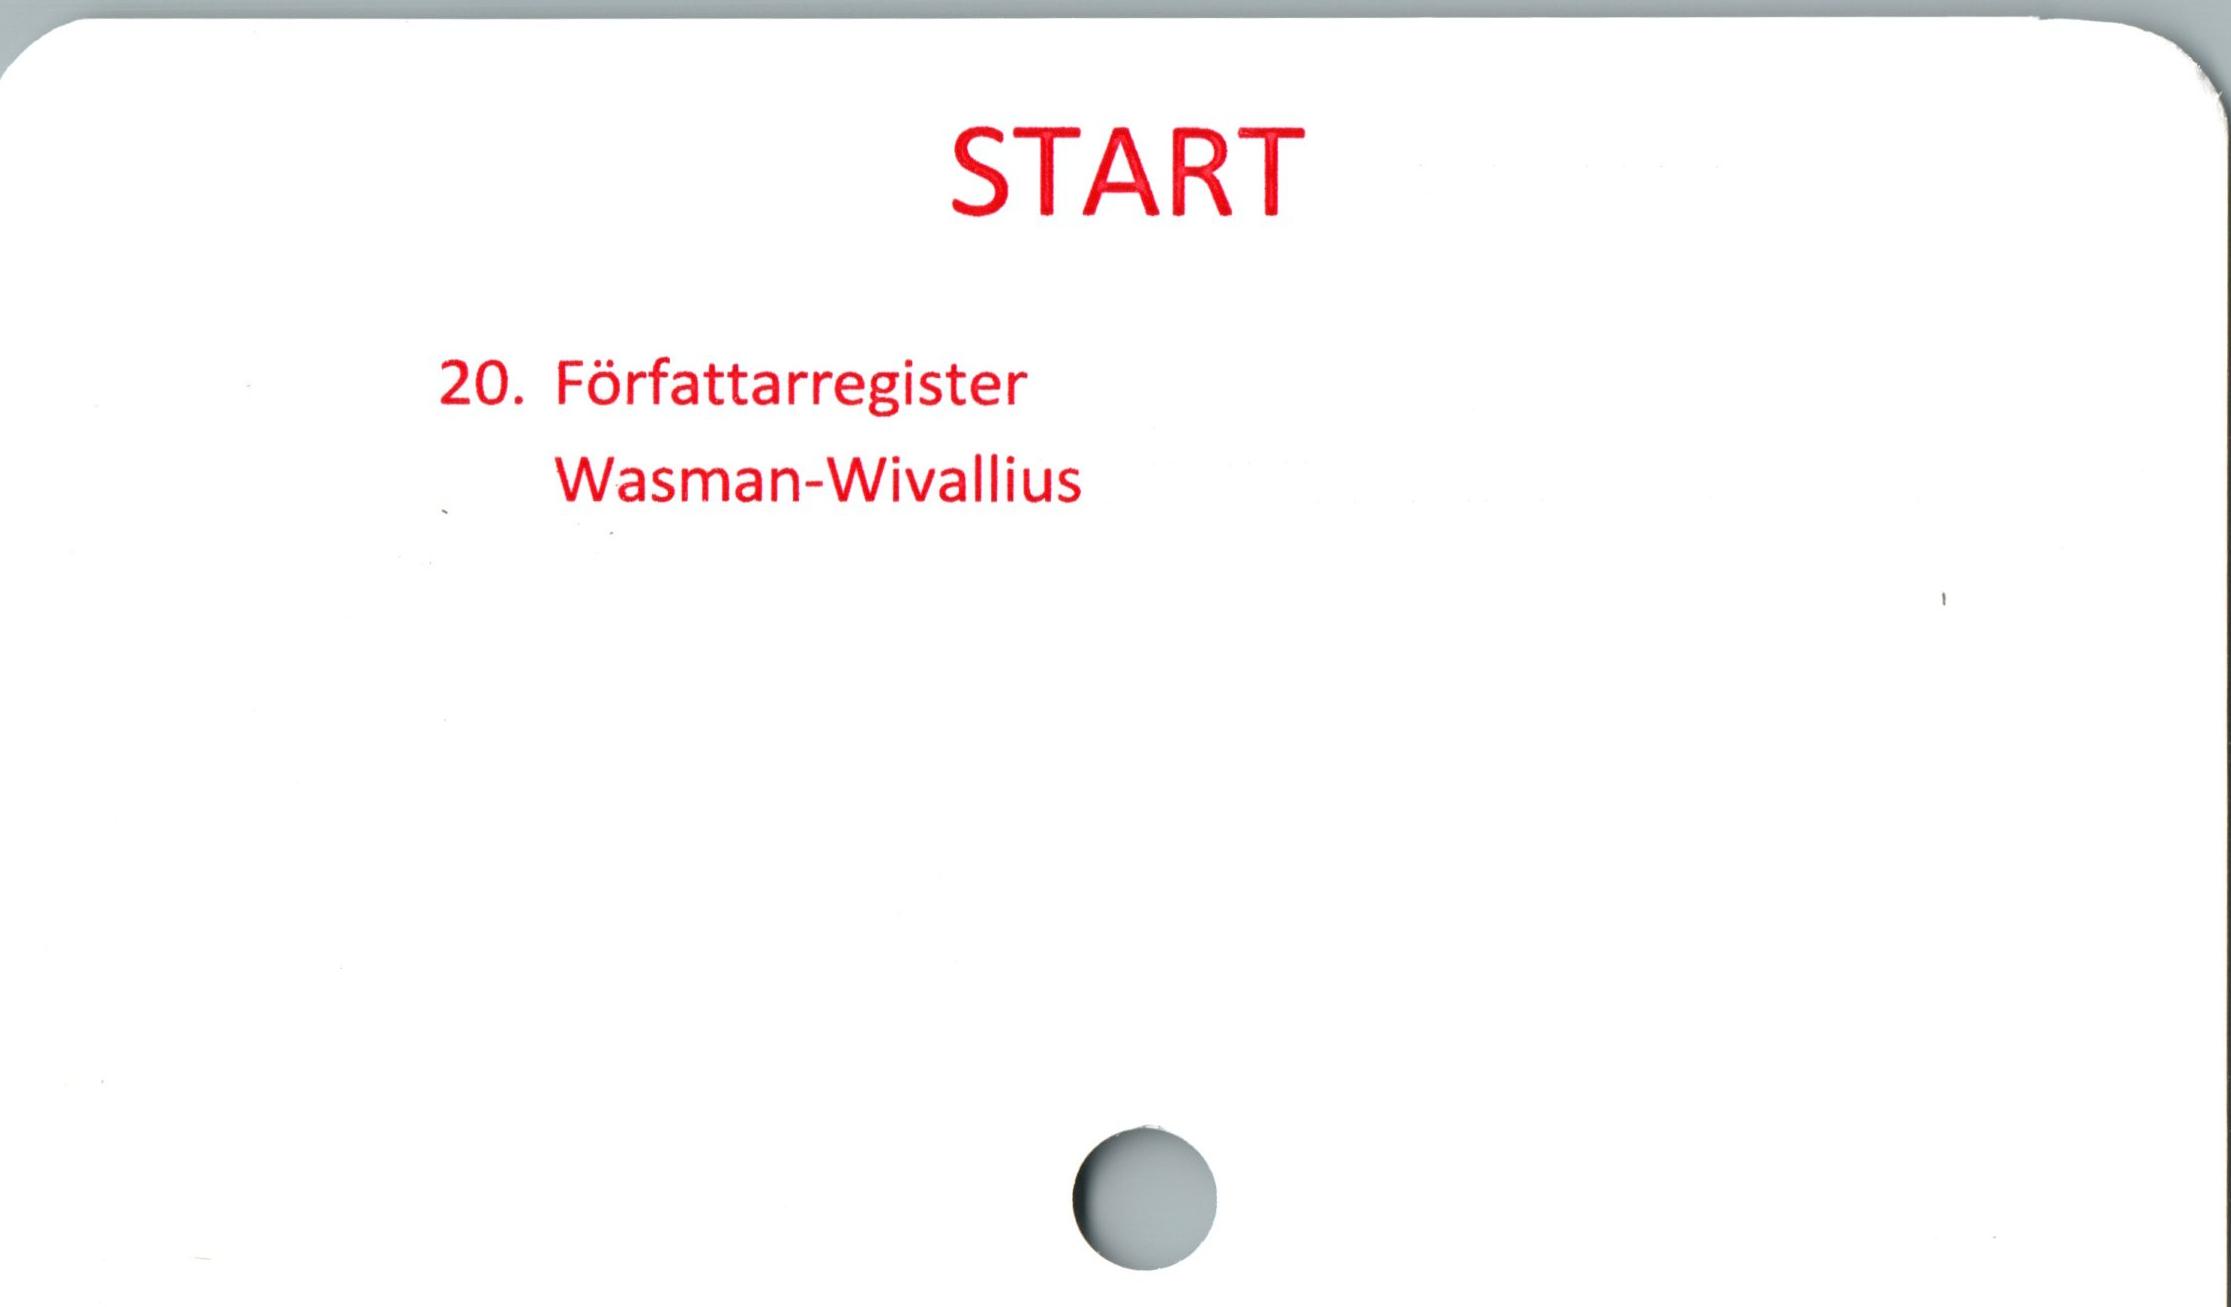  ﻿START

20. Författarregister
Wasman-Wivallius